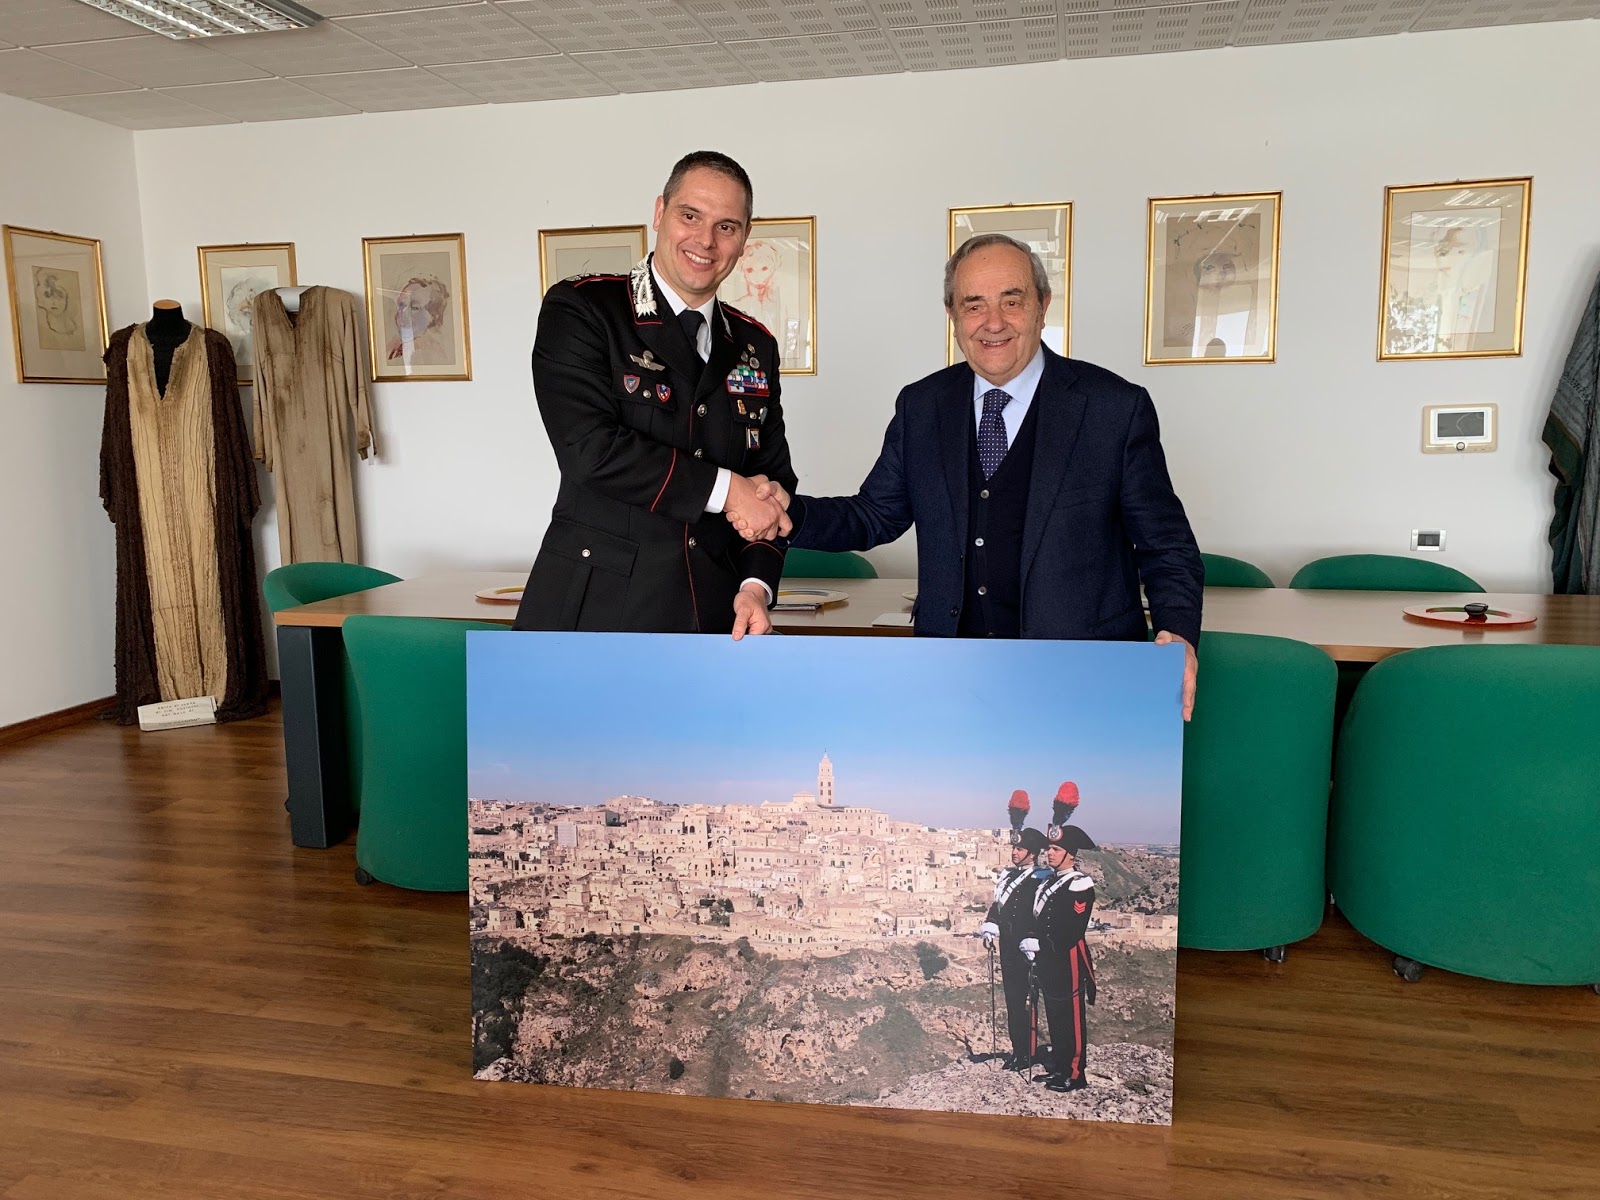 L’Arma dei Carabinieri presente alla Cerimonia inaugurale di Matera Capitale europea della Cultura 2019. I Sassi nel planning in tutte le caserme, le stazioni, i comandi provinciali e regionali